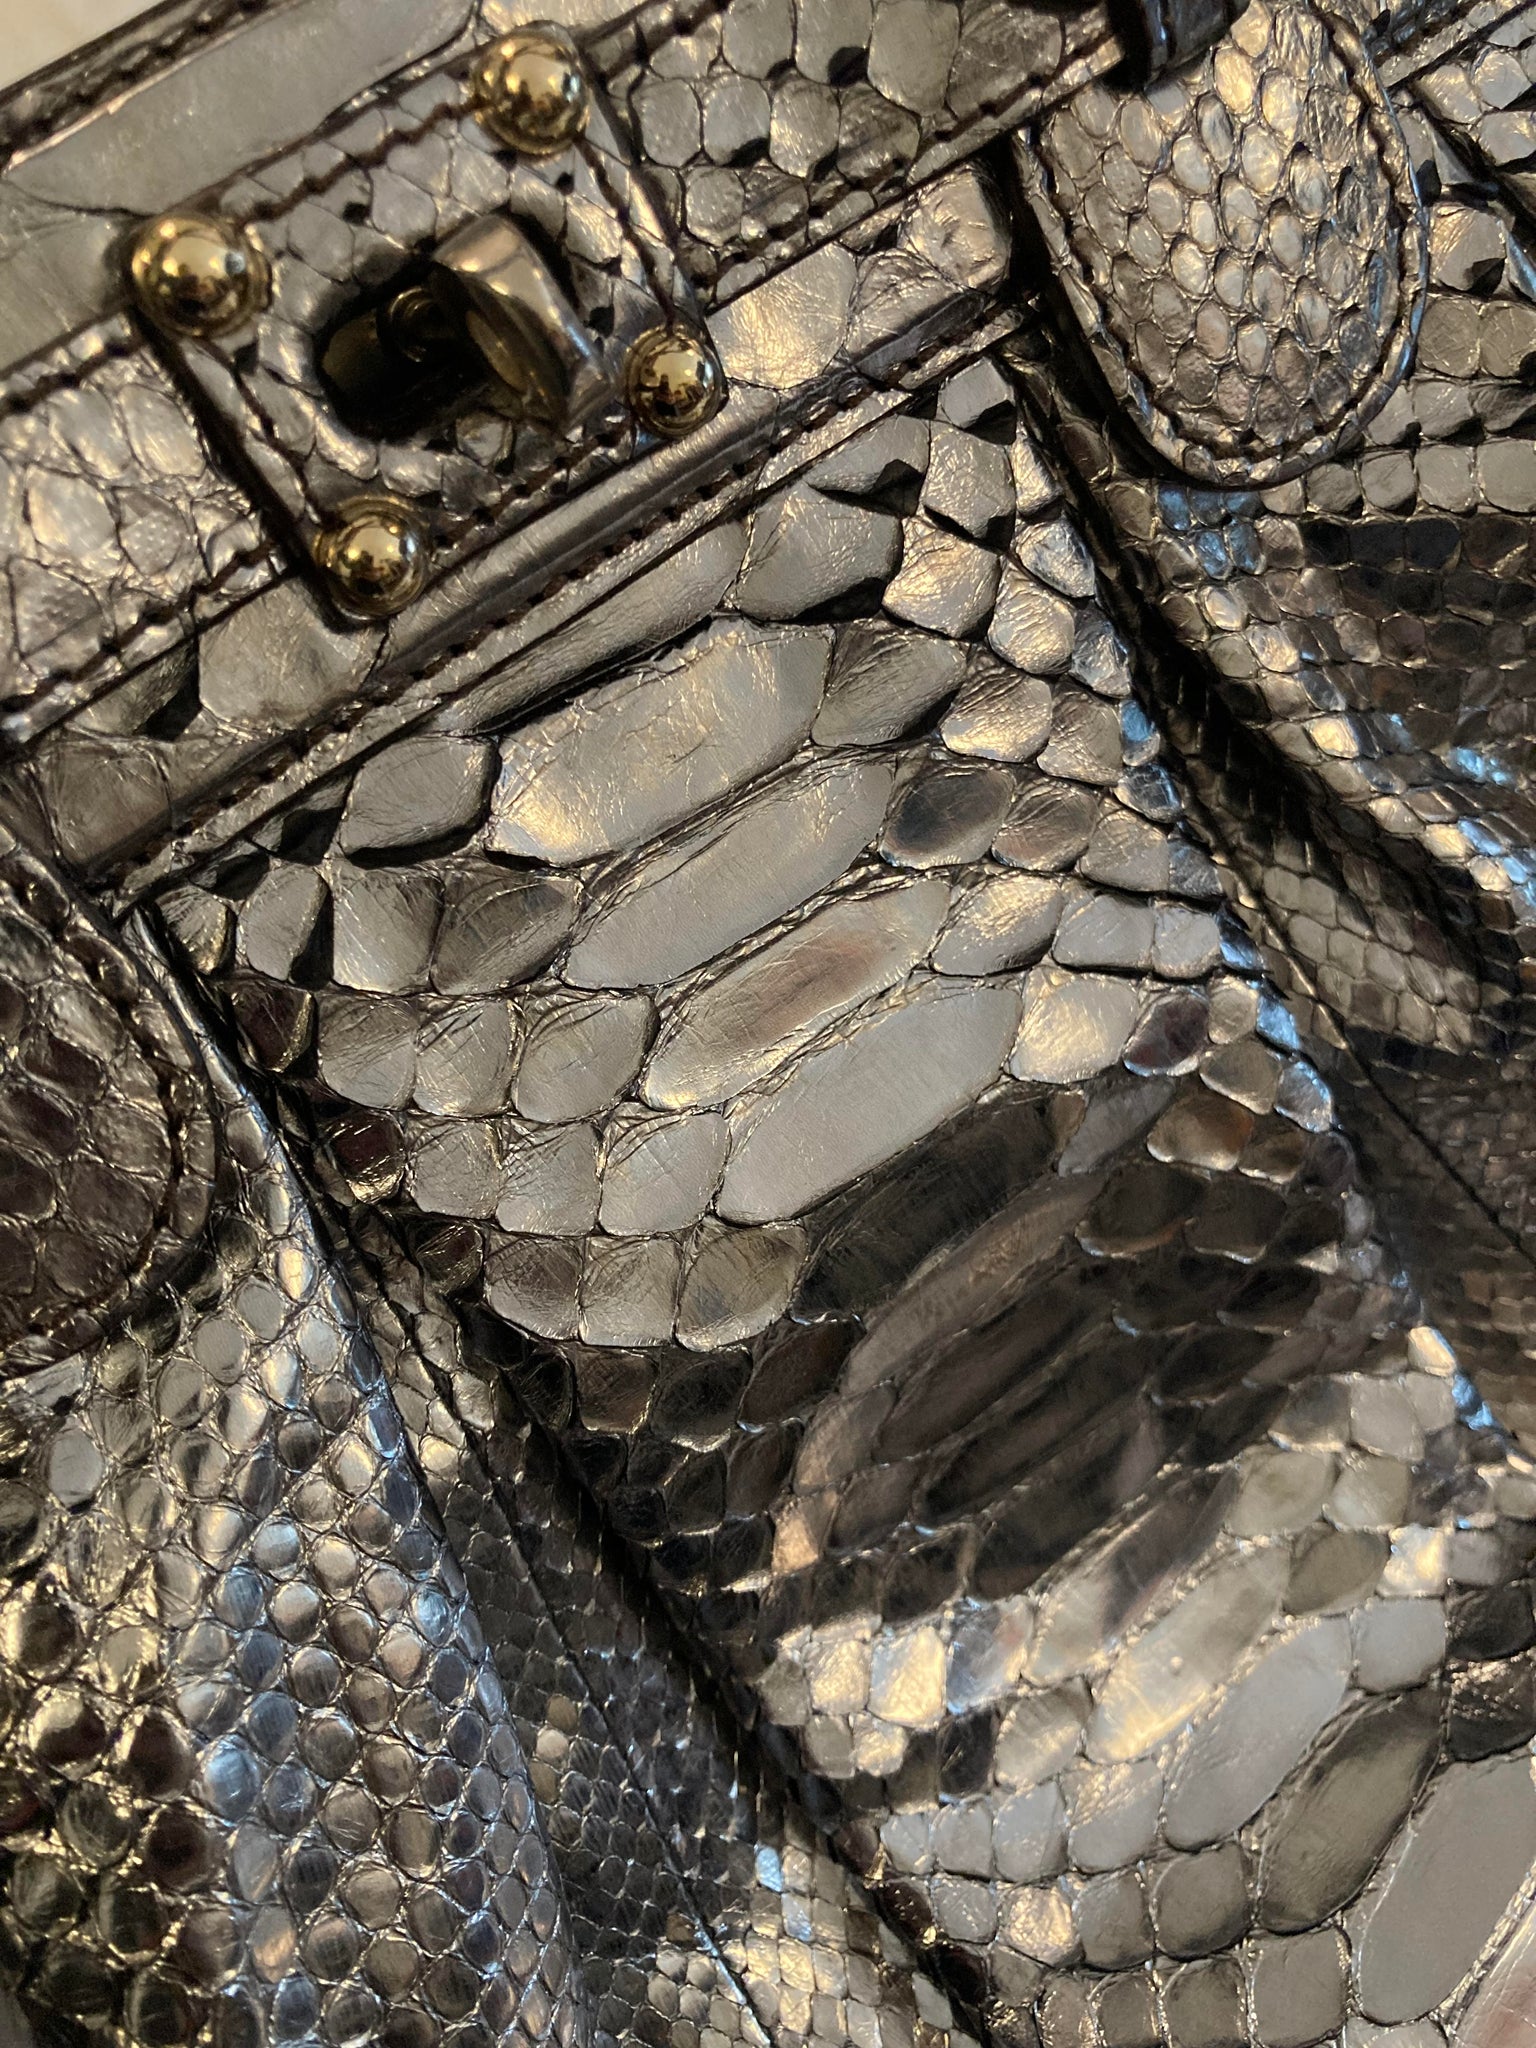 Metallic Python Bag